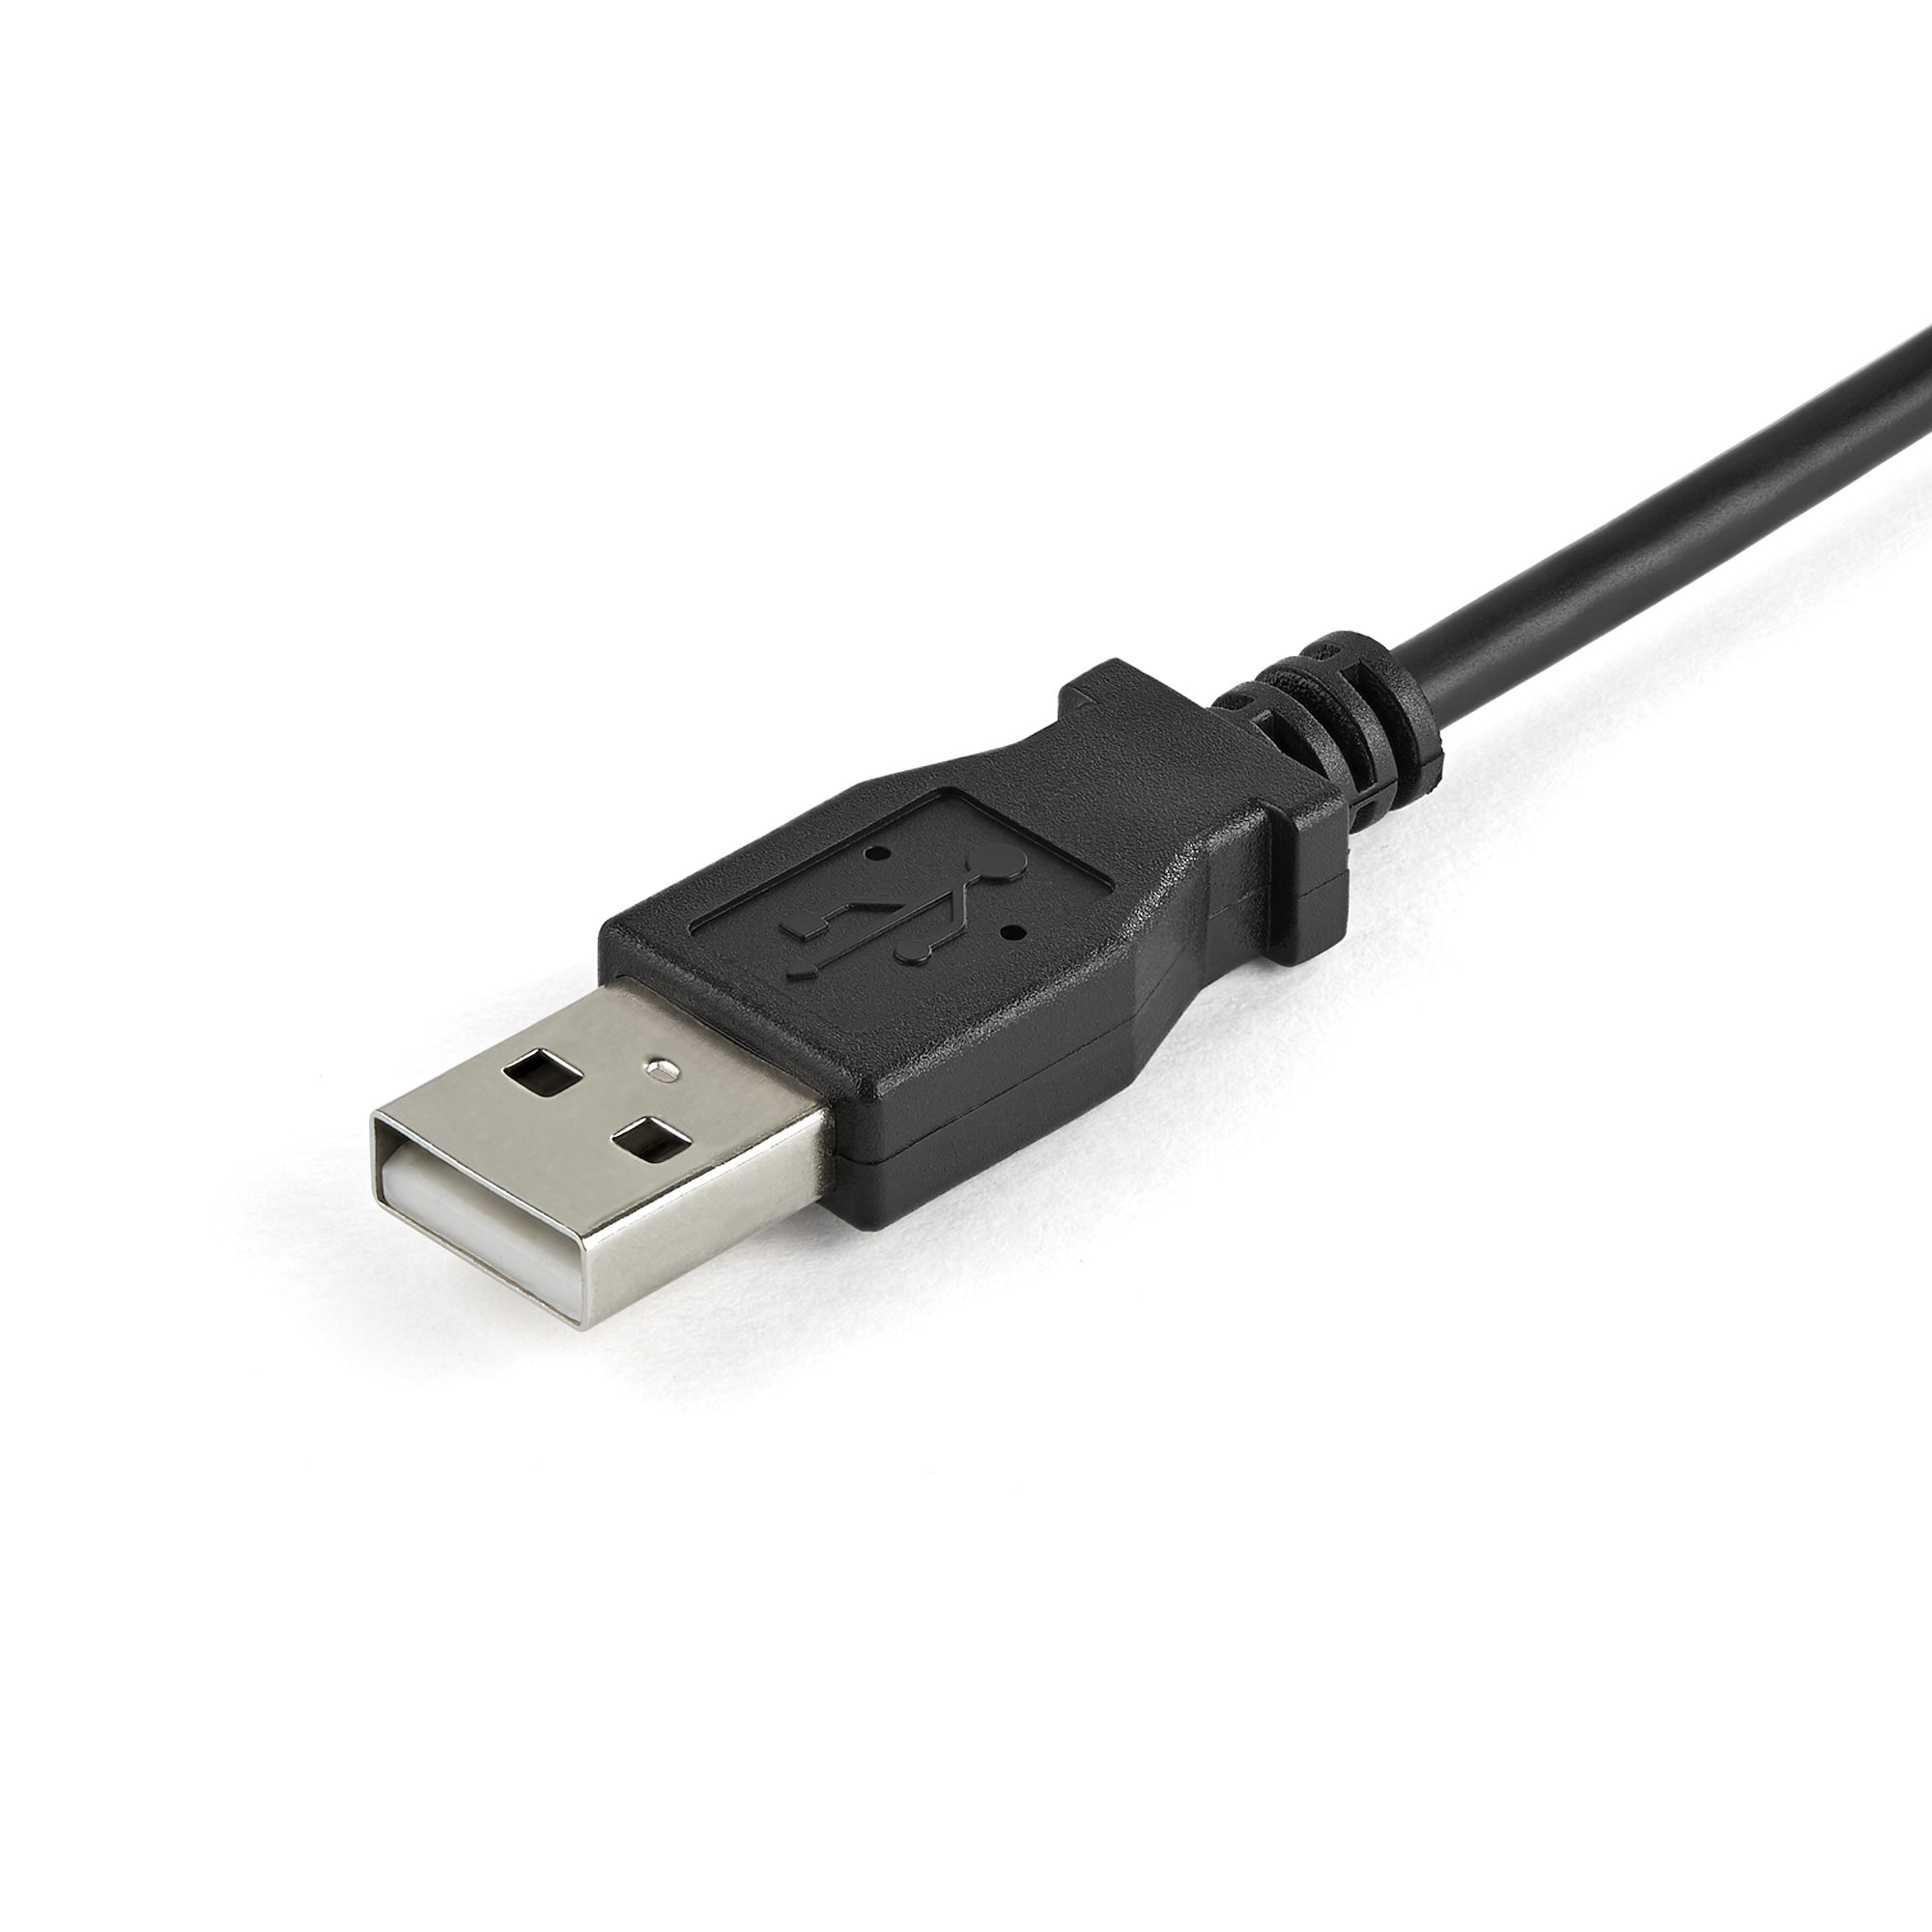 2022公式店舗 ノートパソコン サーバ接続KVMコンソール 保護筐体入り ファイル転送  ビデオキャプチャ機能 USBバスパワー対応 NOTECONS02X